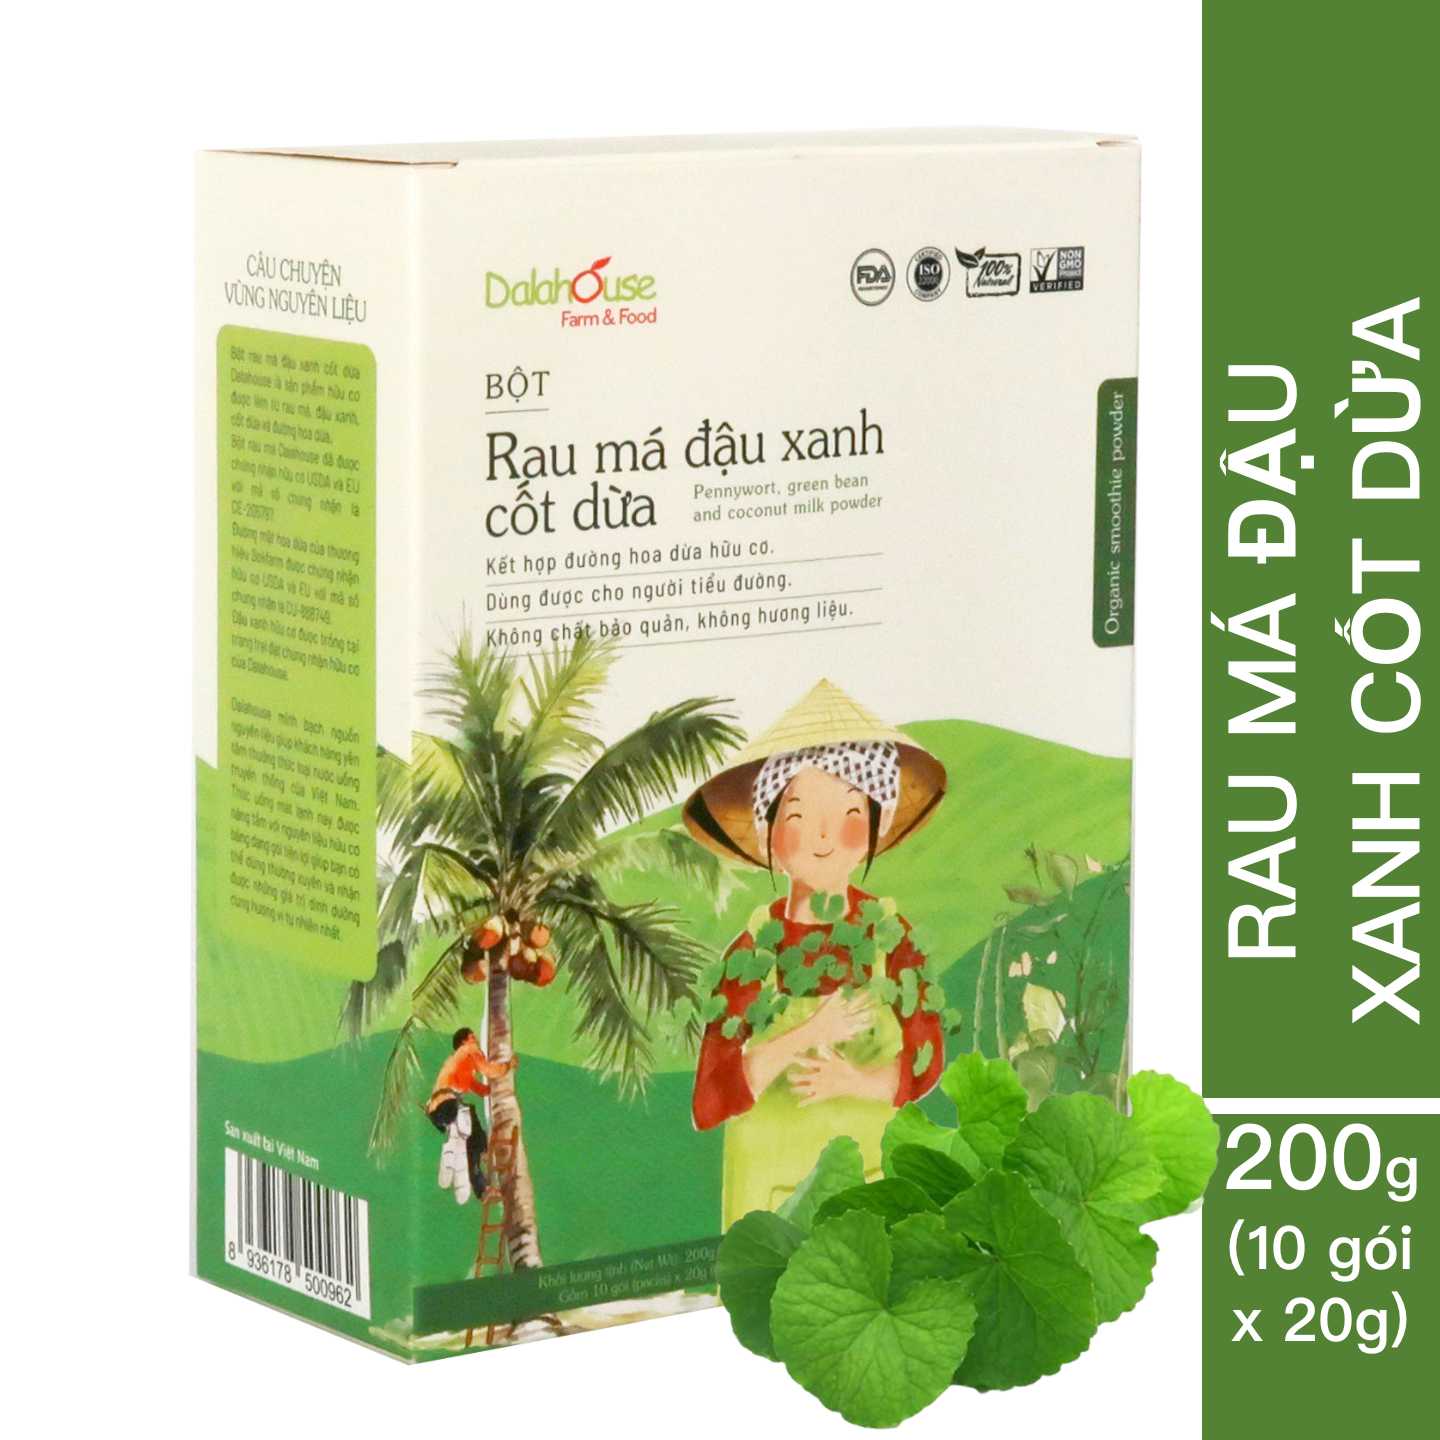 Bột Rau Má Đậu Xanh Cốt Dừa Dalahouse - 200g (10 gói 20g)